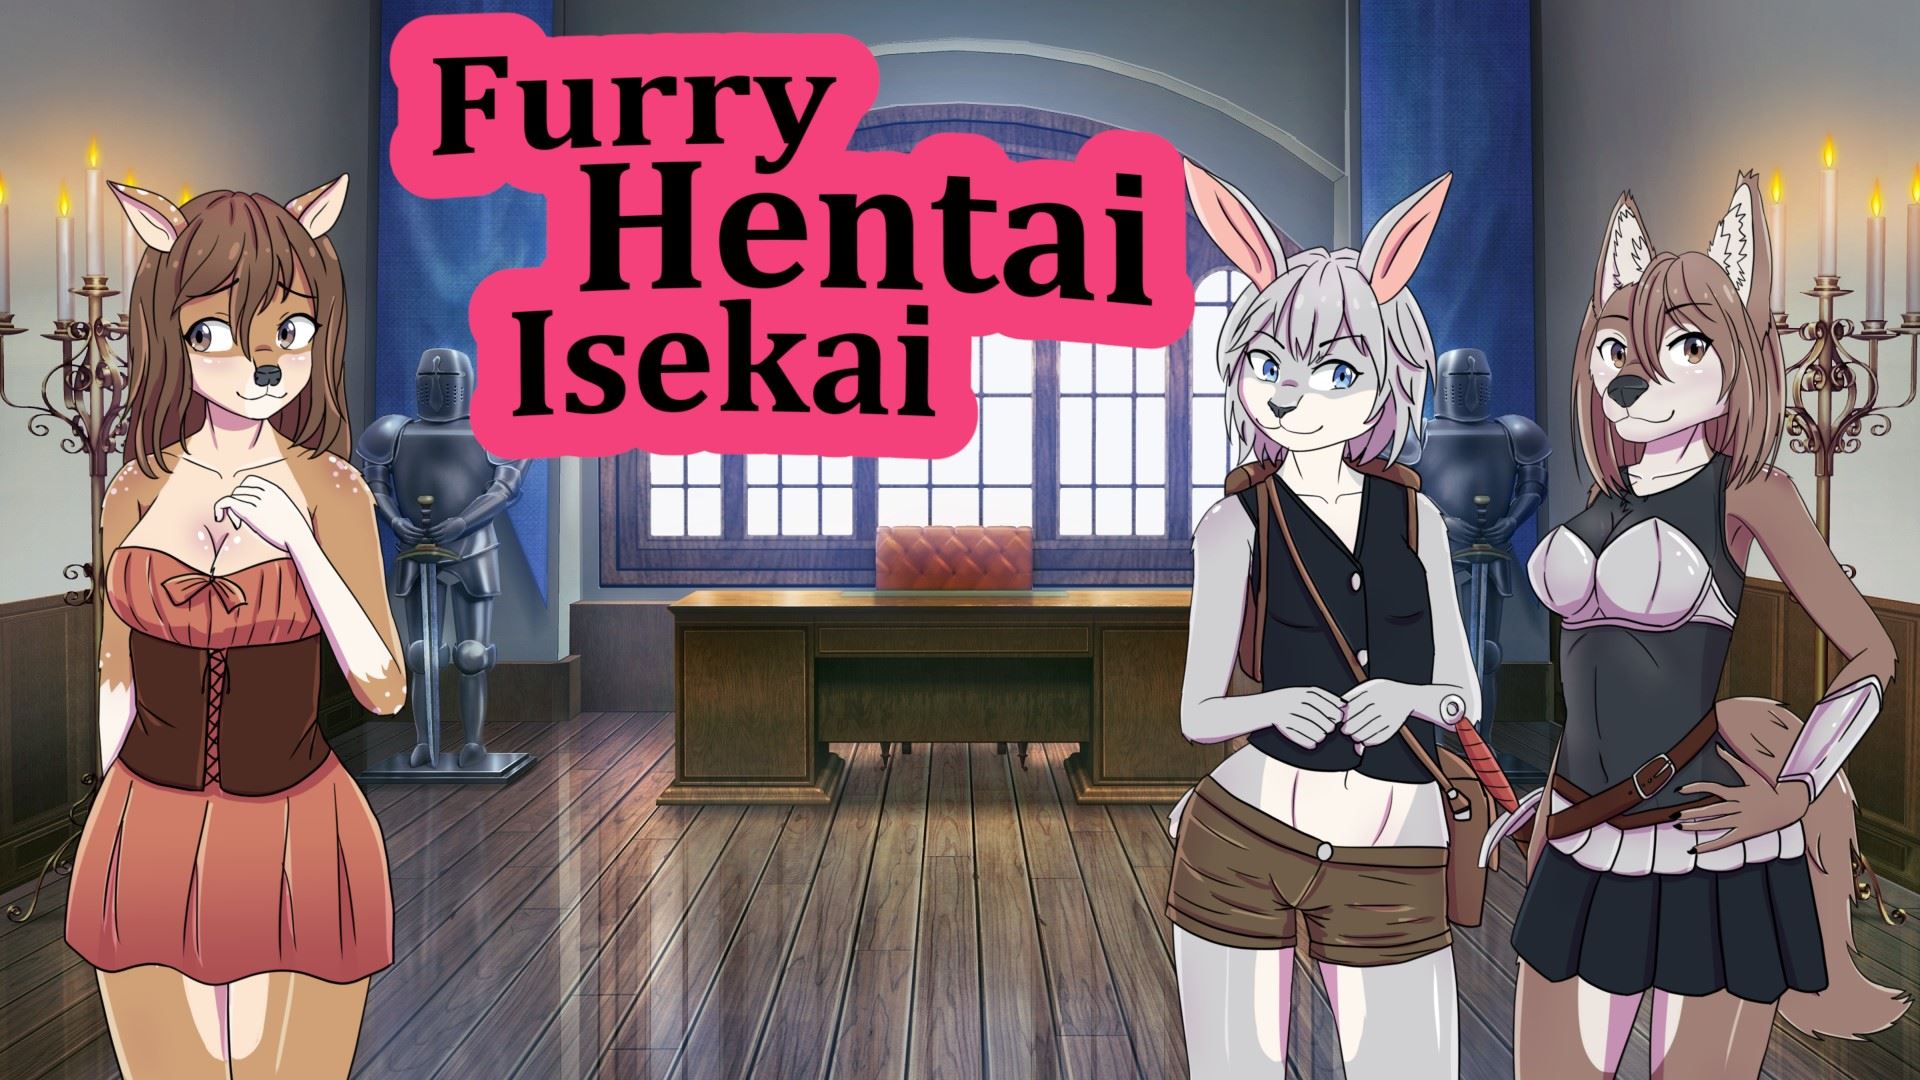 Furry Hentai Isekai porn xxx game download cover